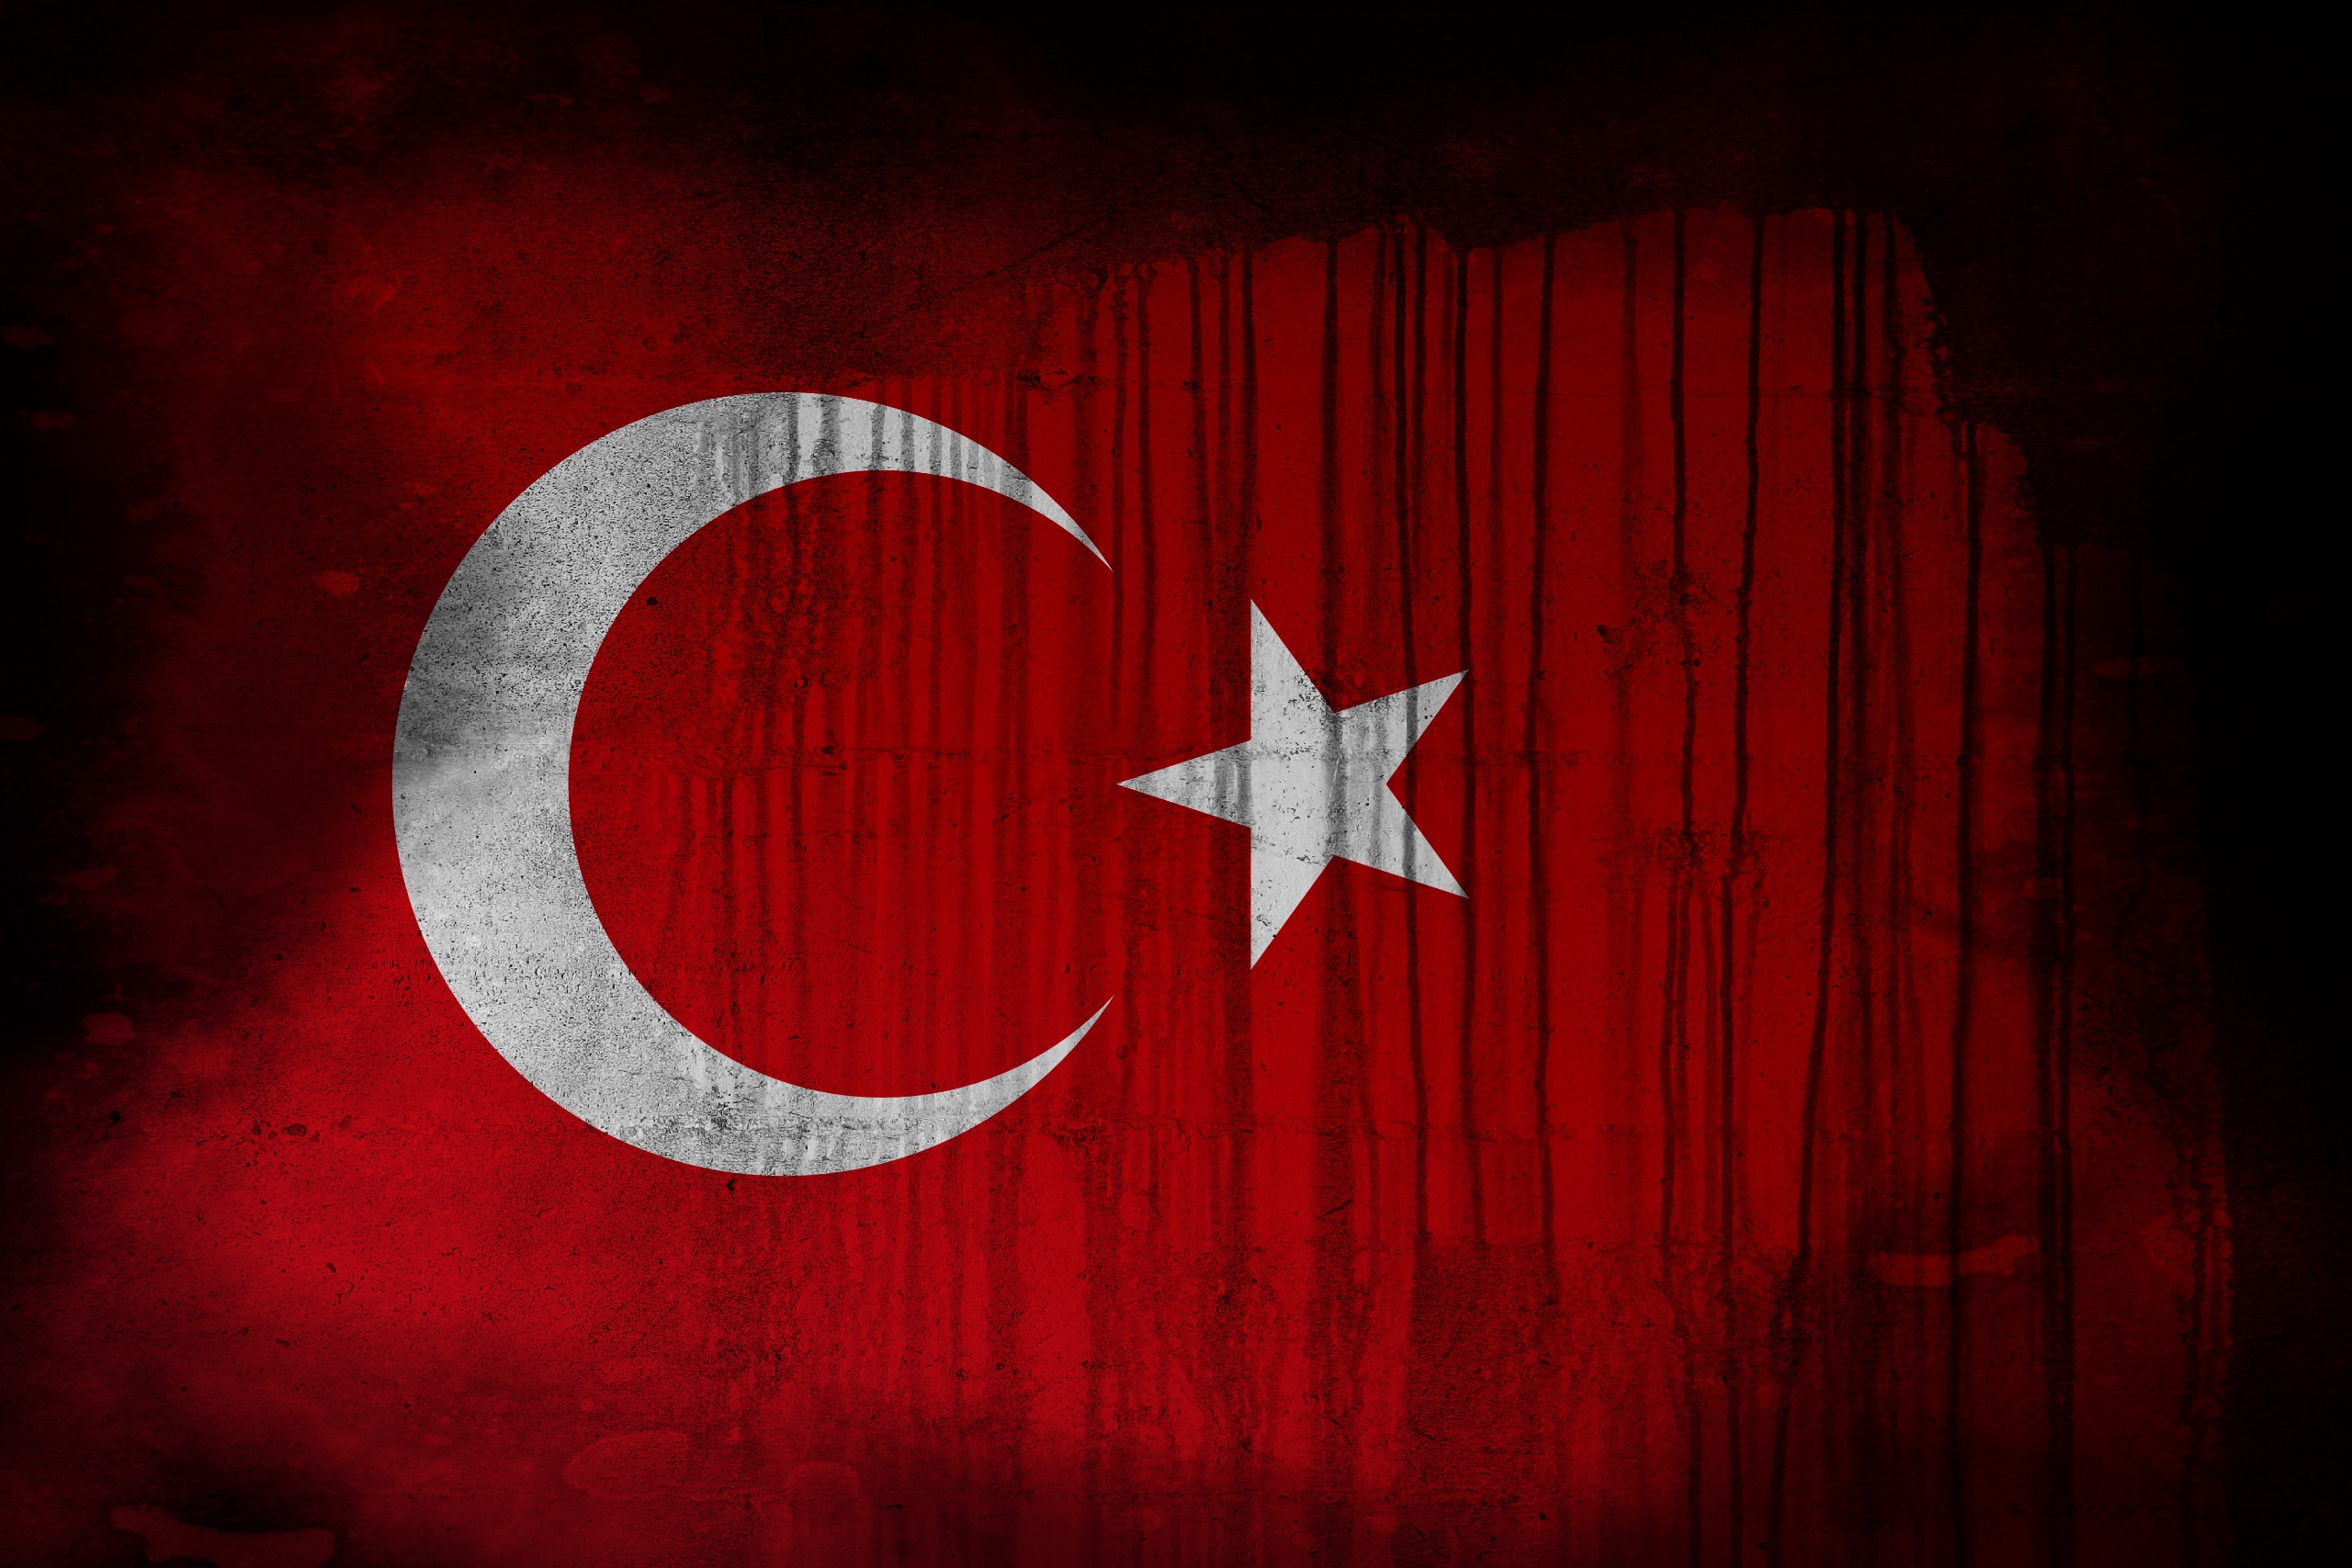 Скачать обои Флаг Турции на телефон бесплатно